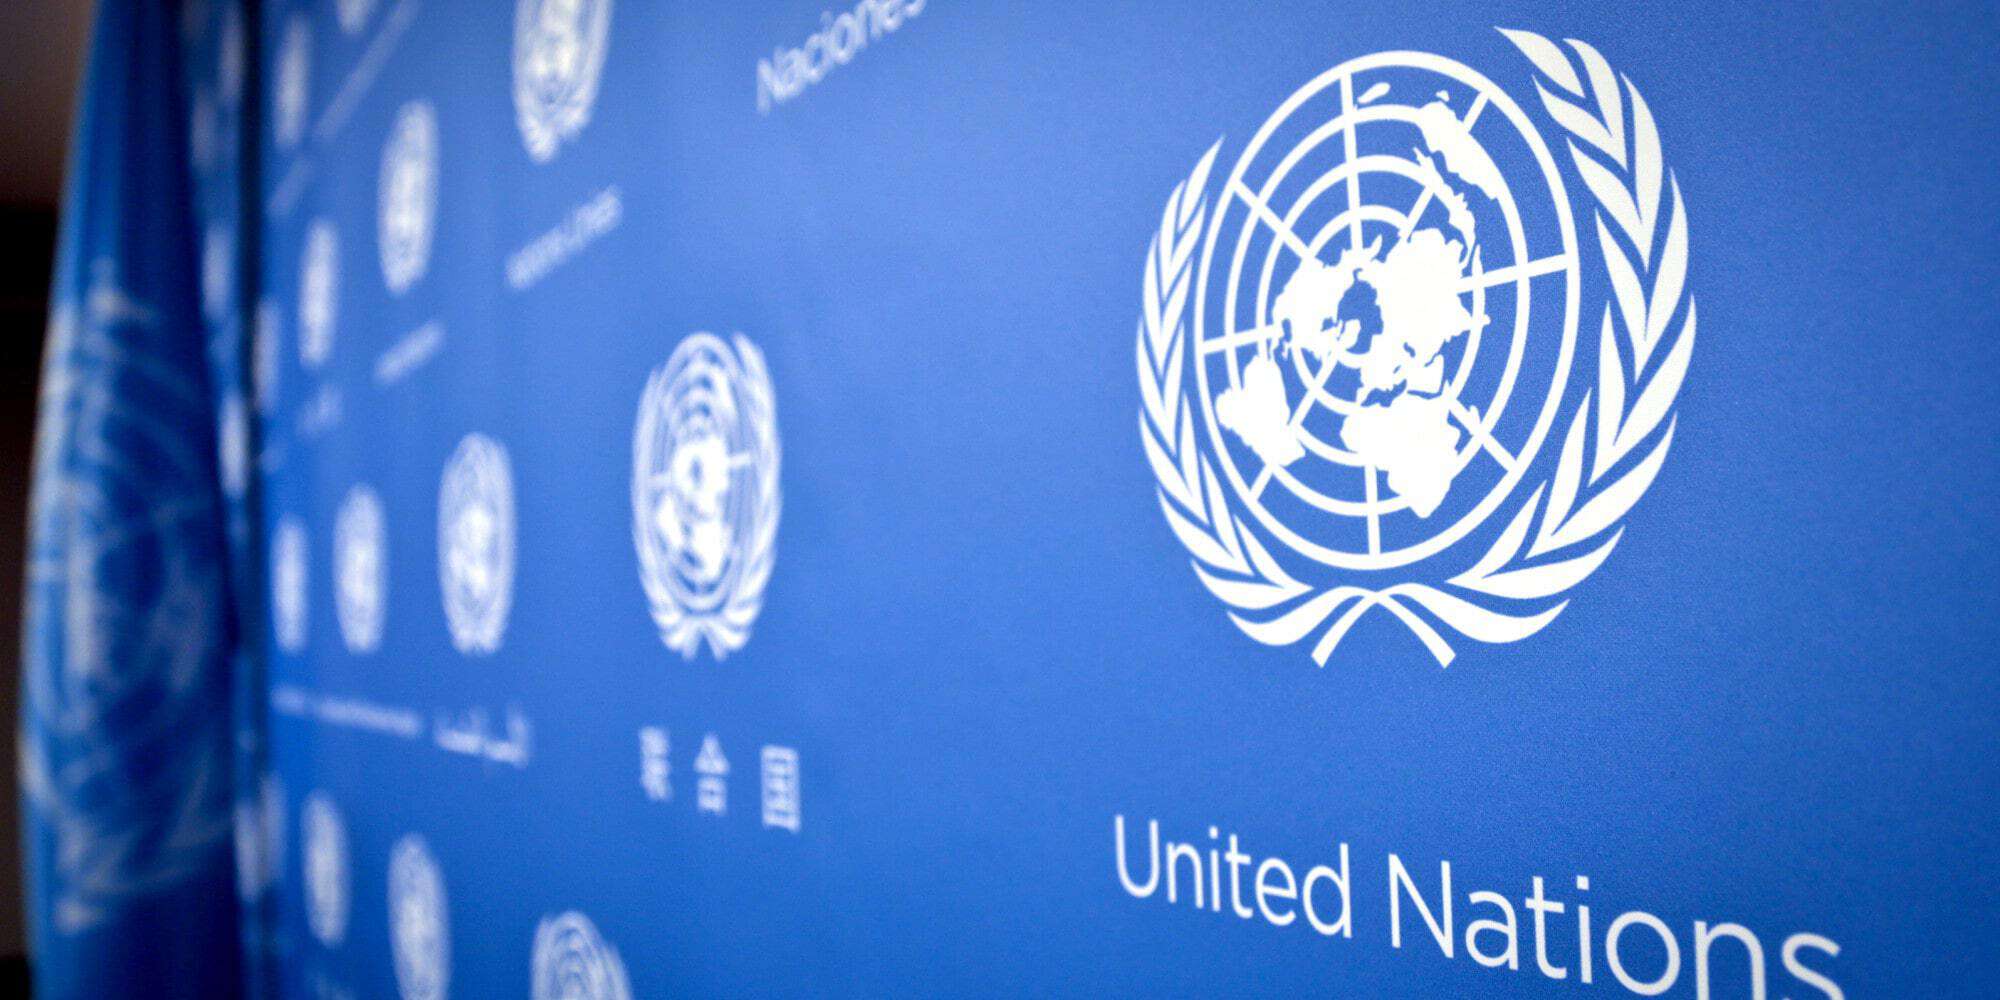 FN förstärkt engangemang via VR